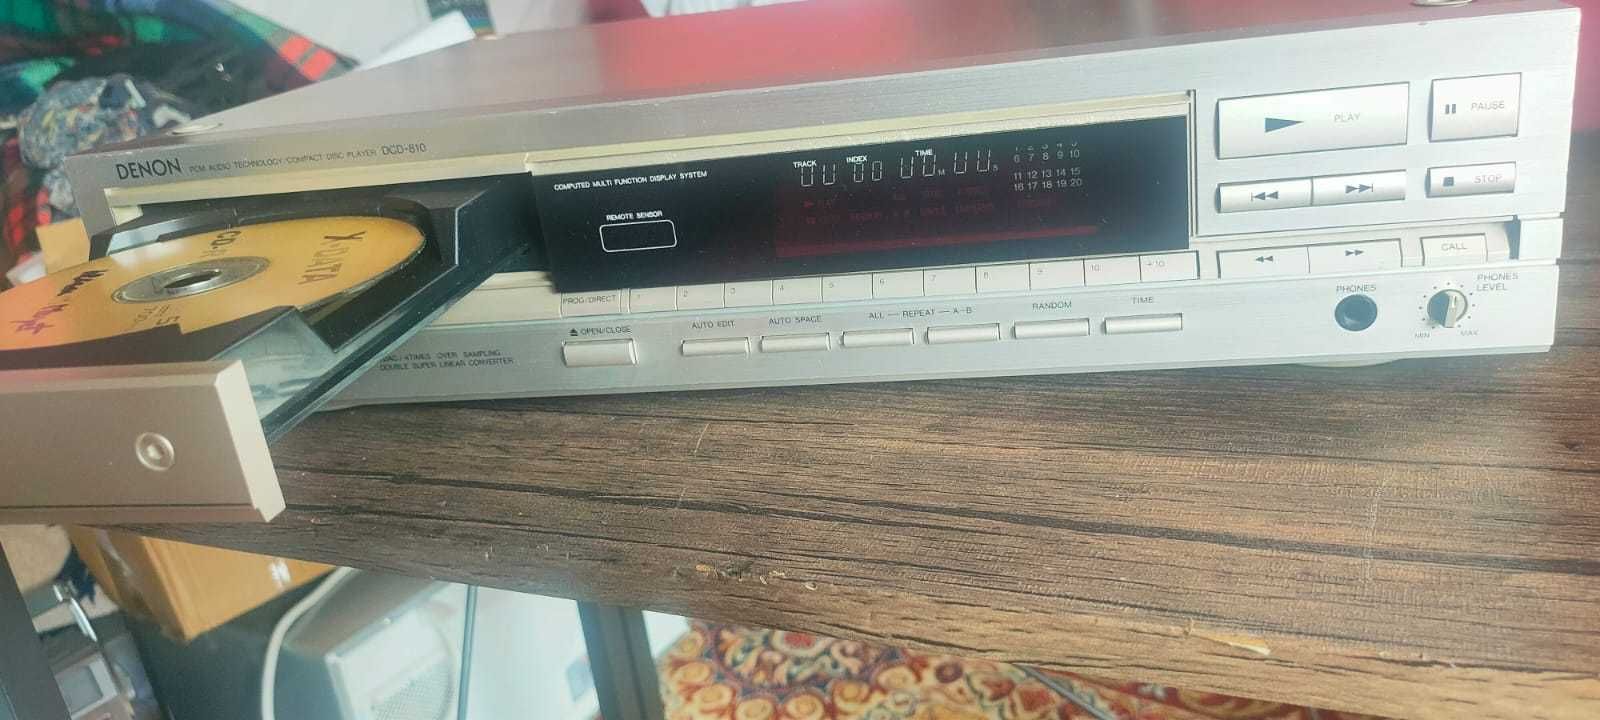 Denon DCD-810 cd player